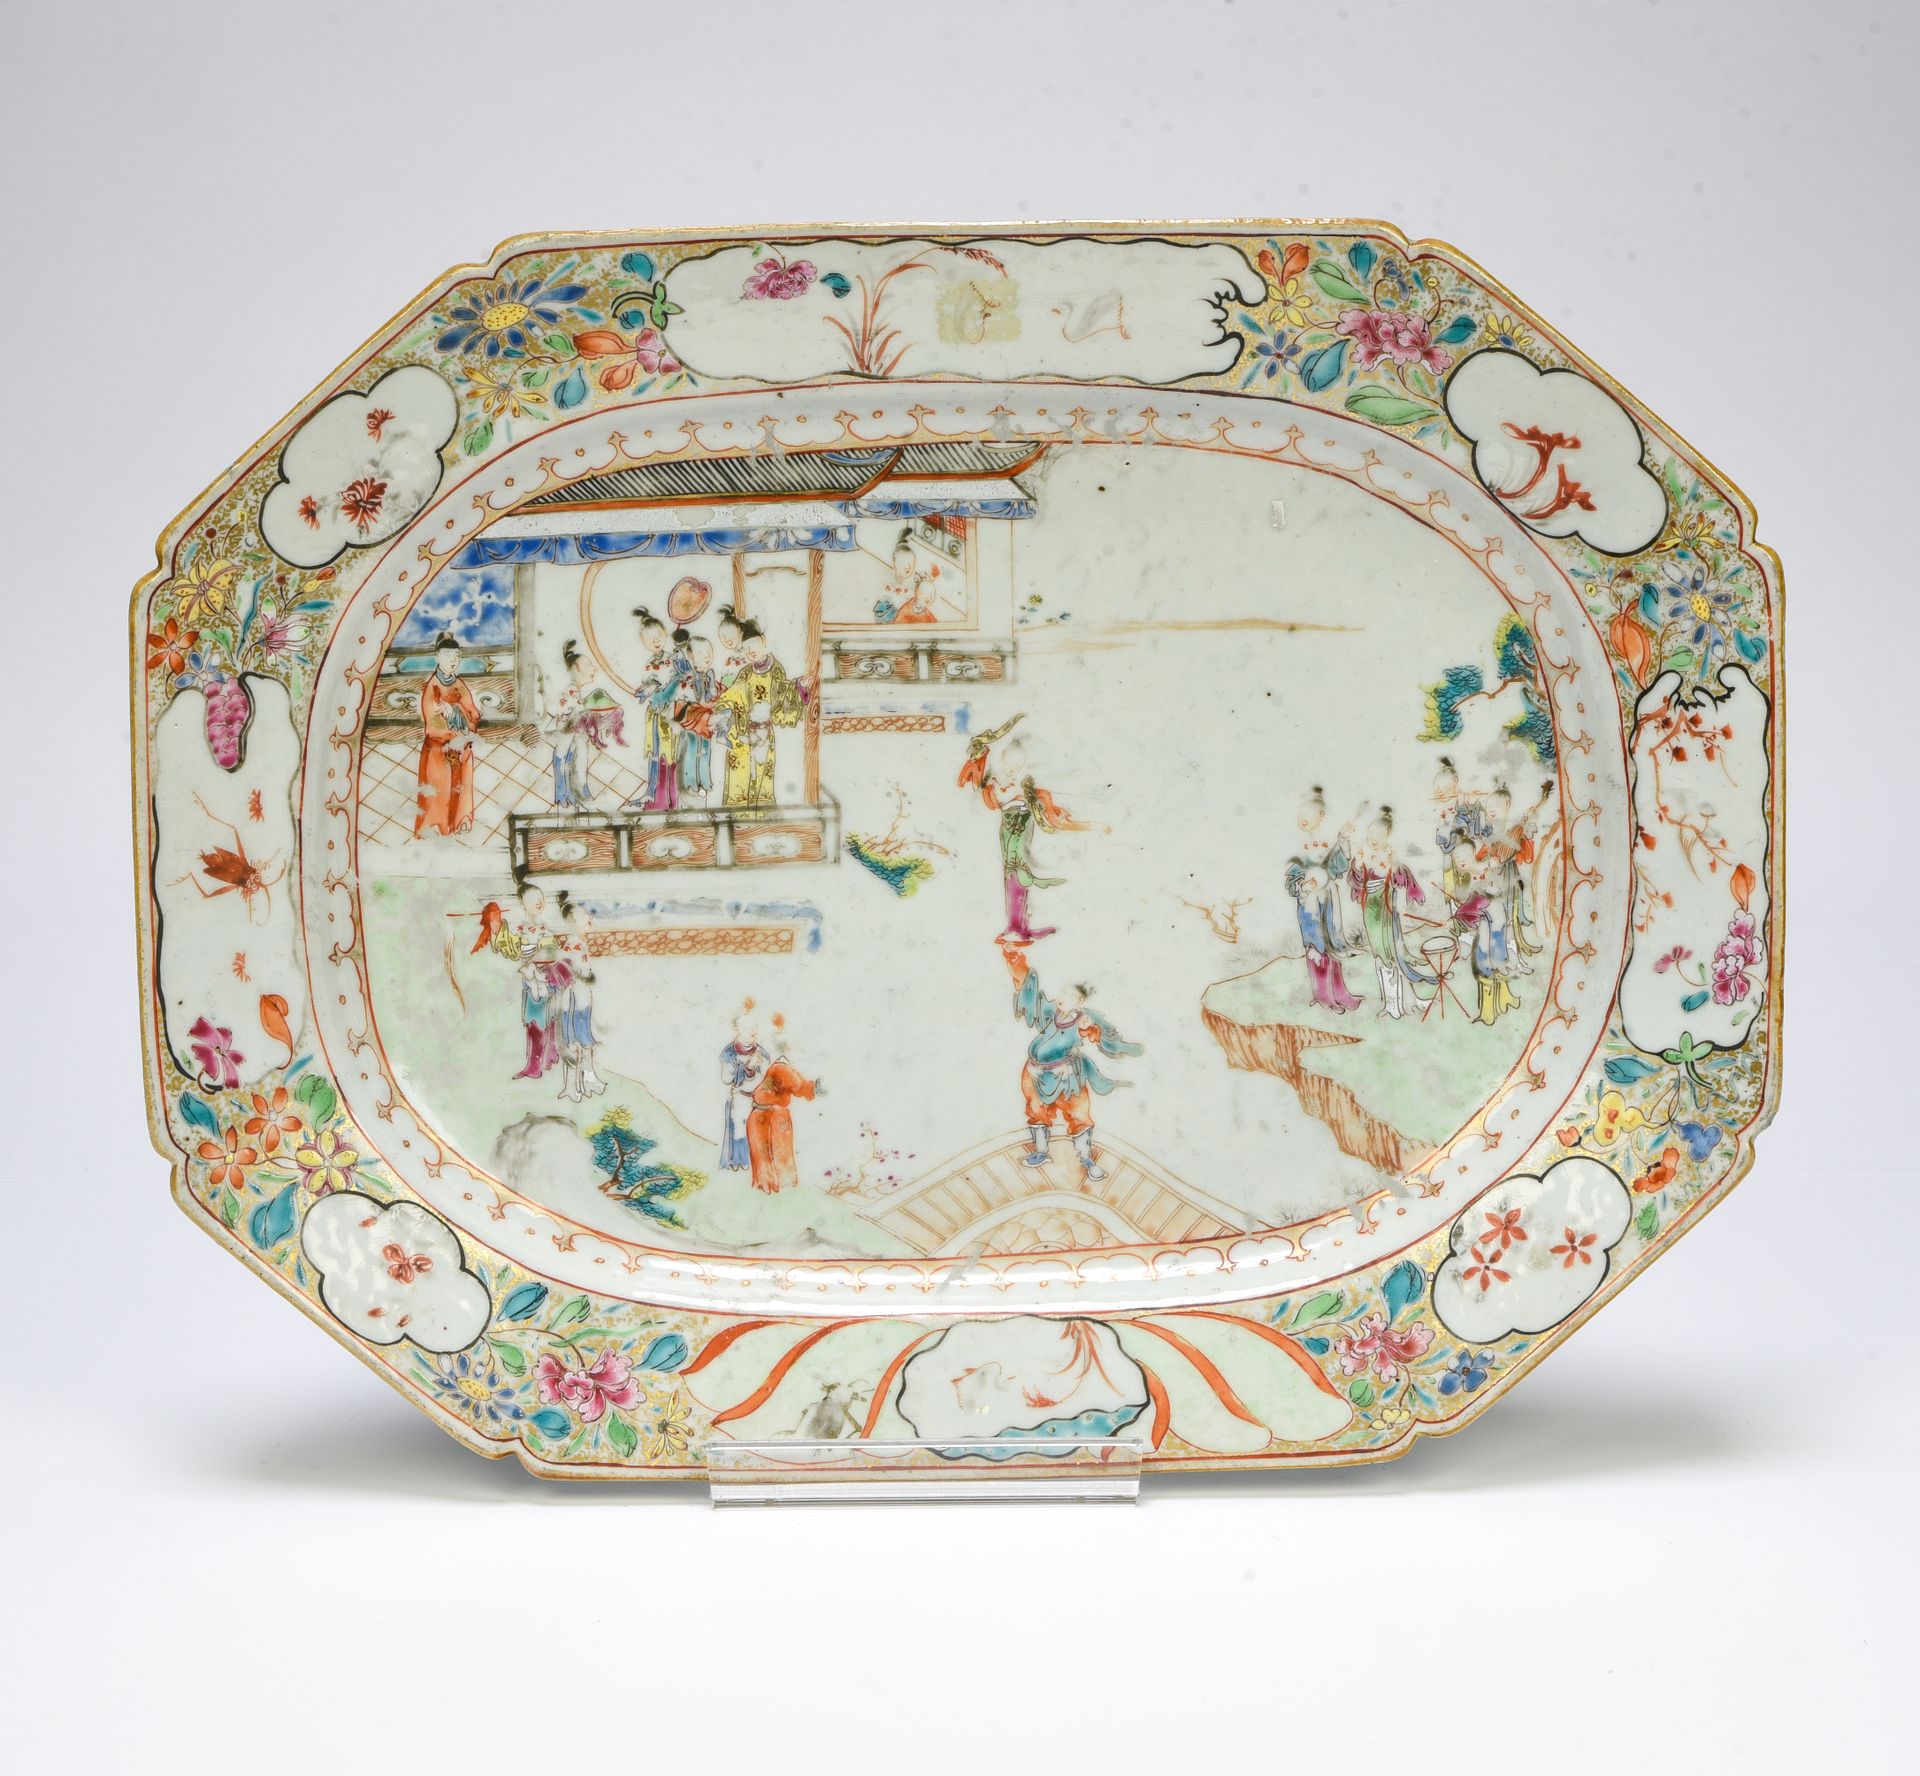 Null 中国，印度公司--乾隆晚期（1736-1795）。

长方形展示架，侧面有切口



瓷器上装饰有粉红色家族的多色珐琅和金质珐琅，是一个在宫殿里的政要&hellip;